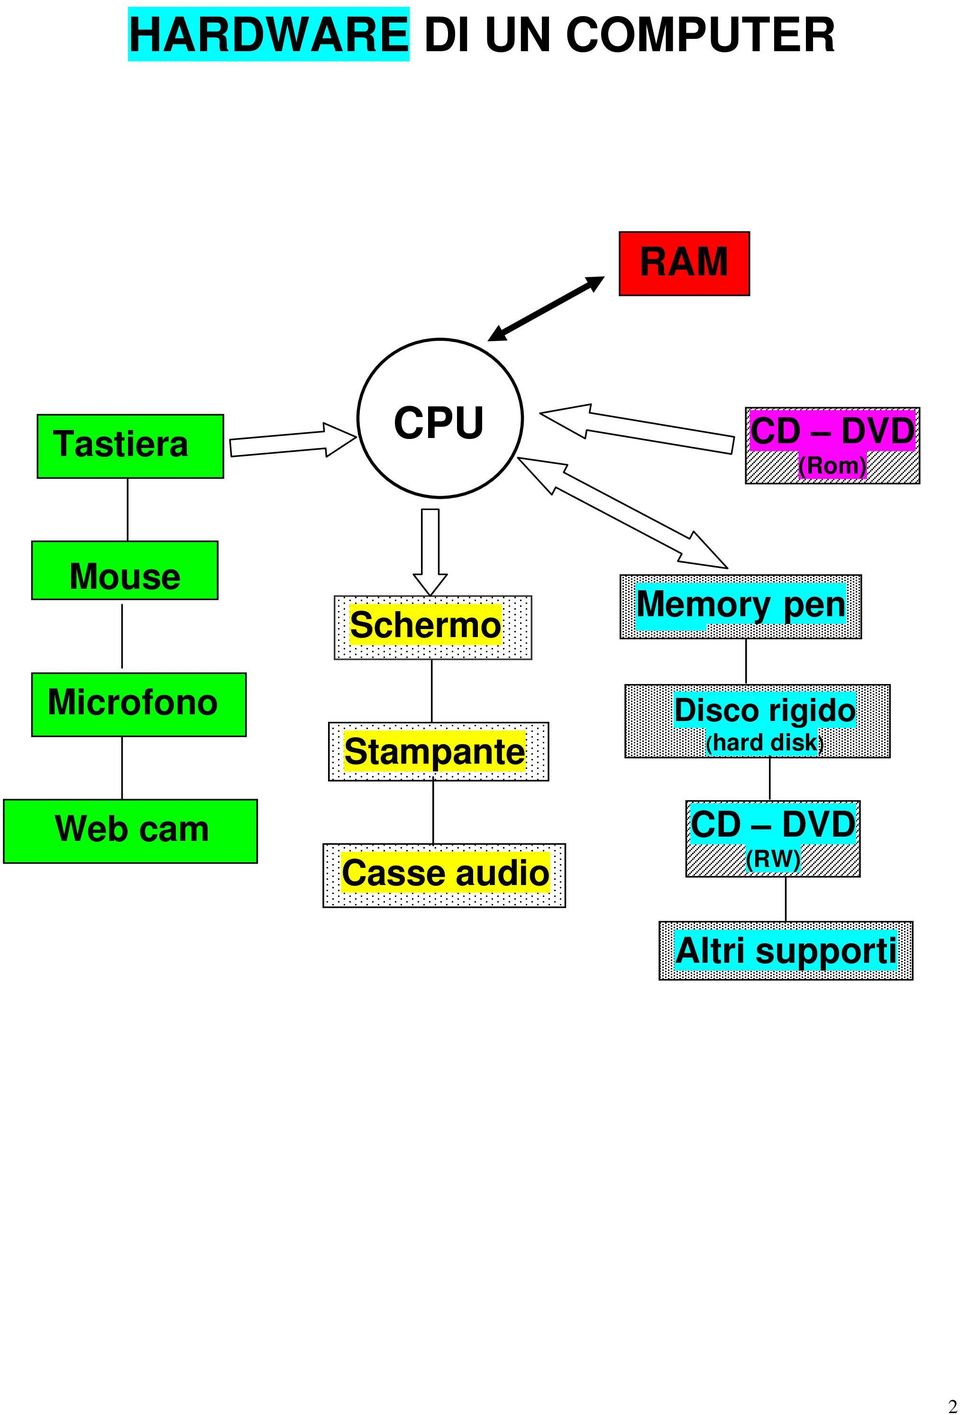 Schermo Stampante Casse audio Memory pen